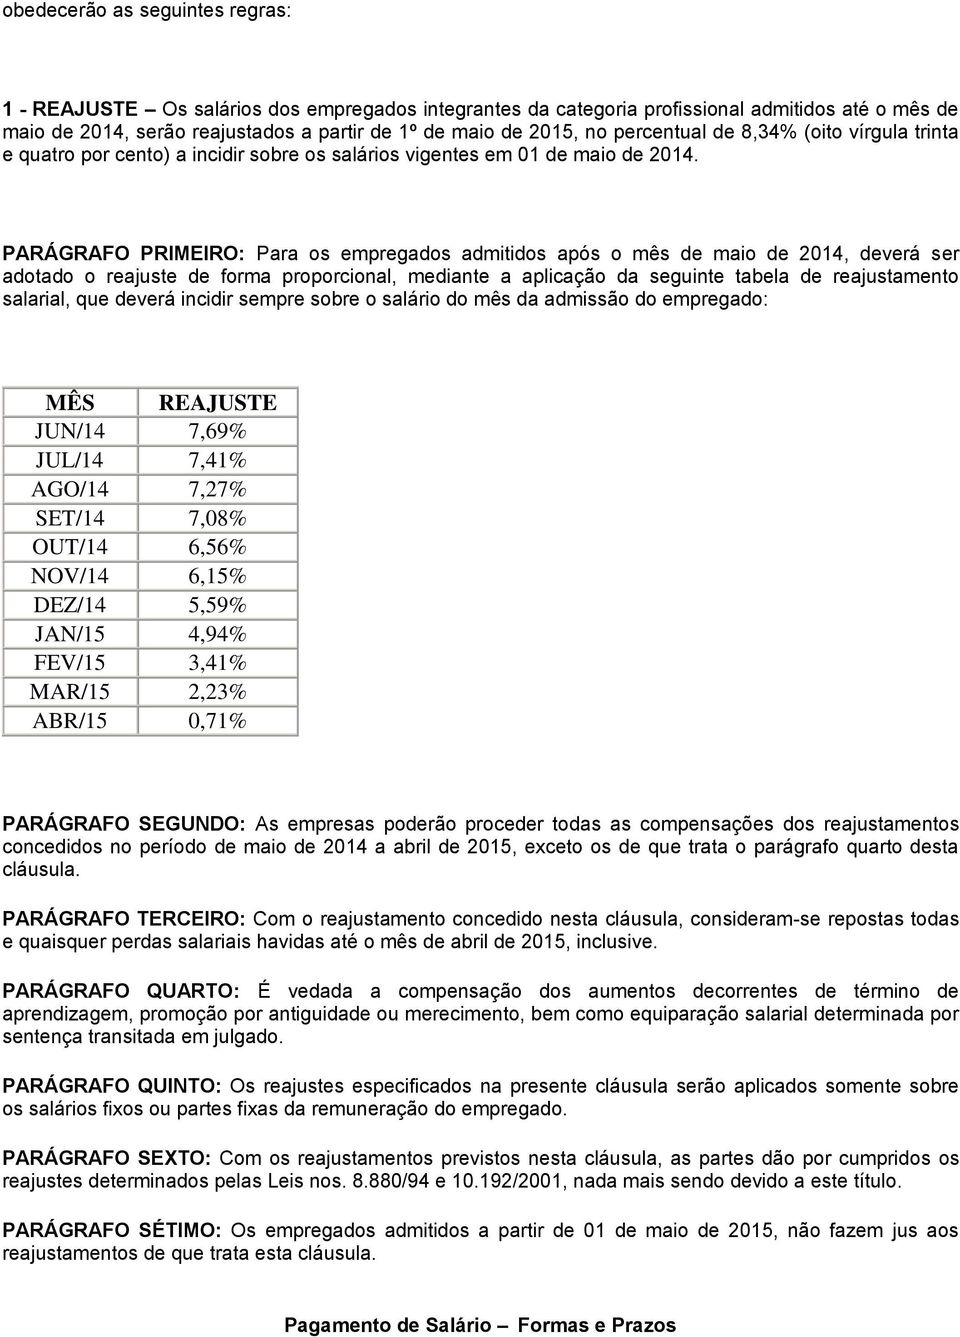 PARÁGRAFO PRIMEIRO: Para os empregados admitidos após o mês de maio de 2014, deverá ser adotado o reajuste de forma proporcional, mediante a aplicação da seguinte tabela de reajustamento salarial,